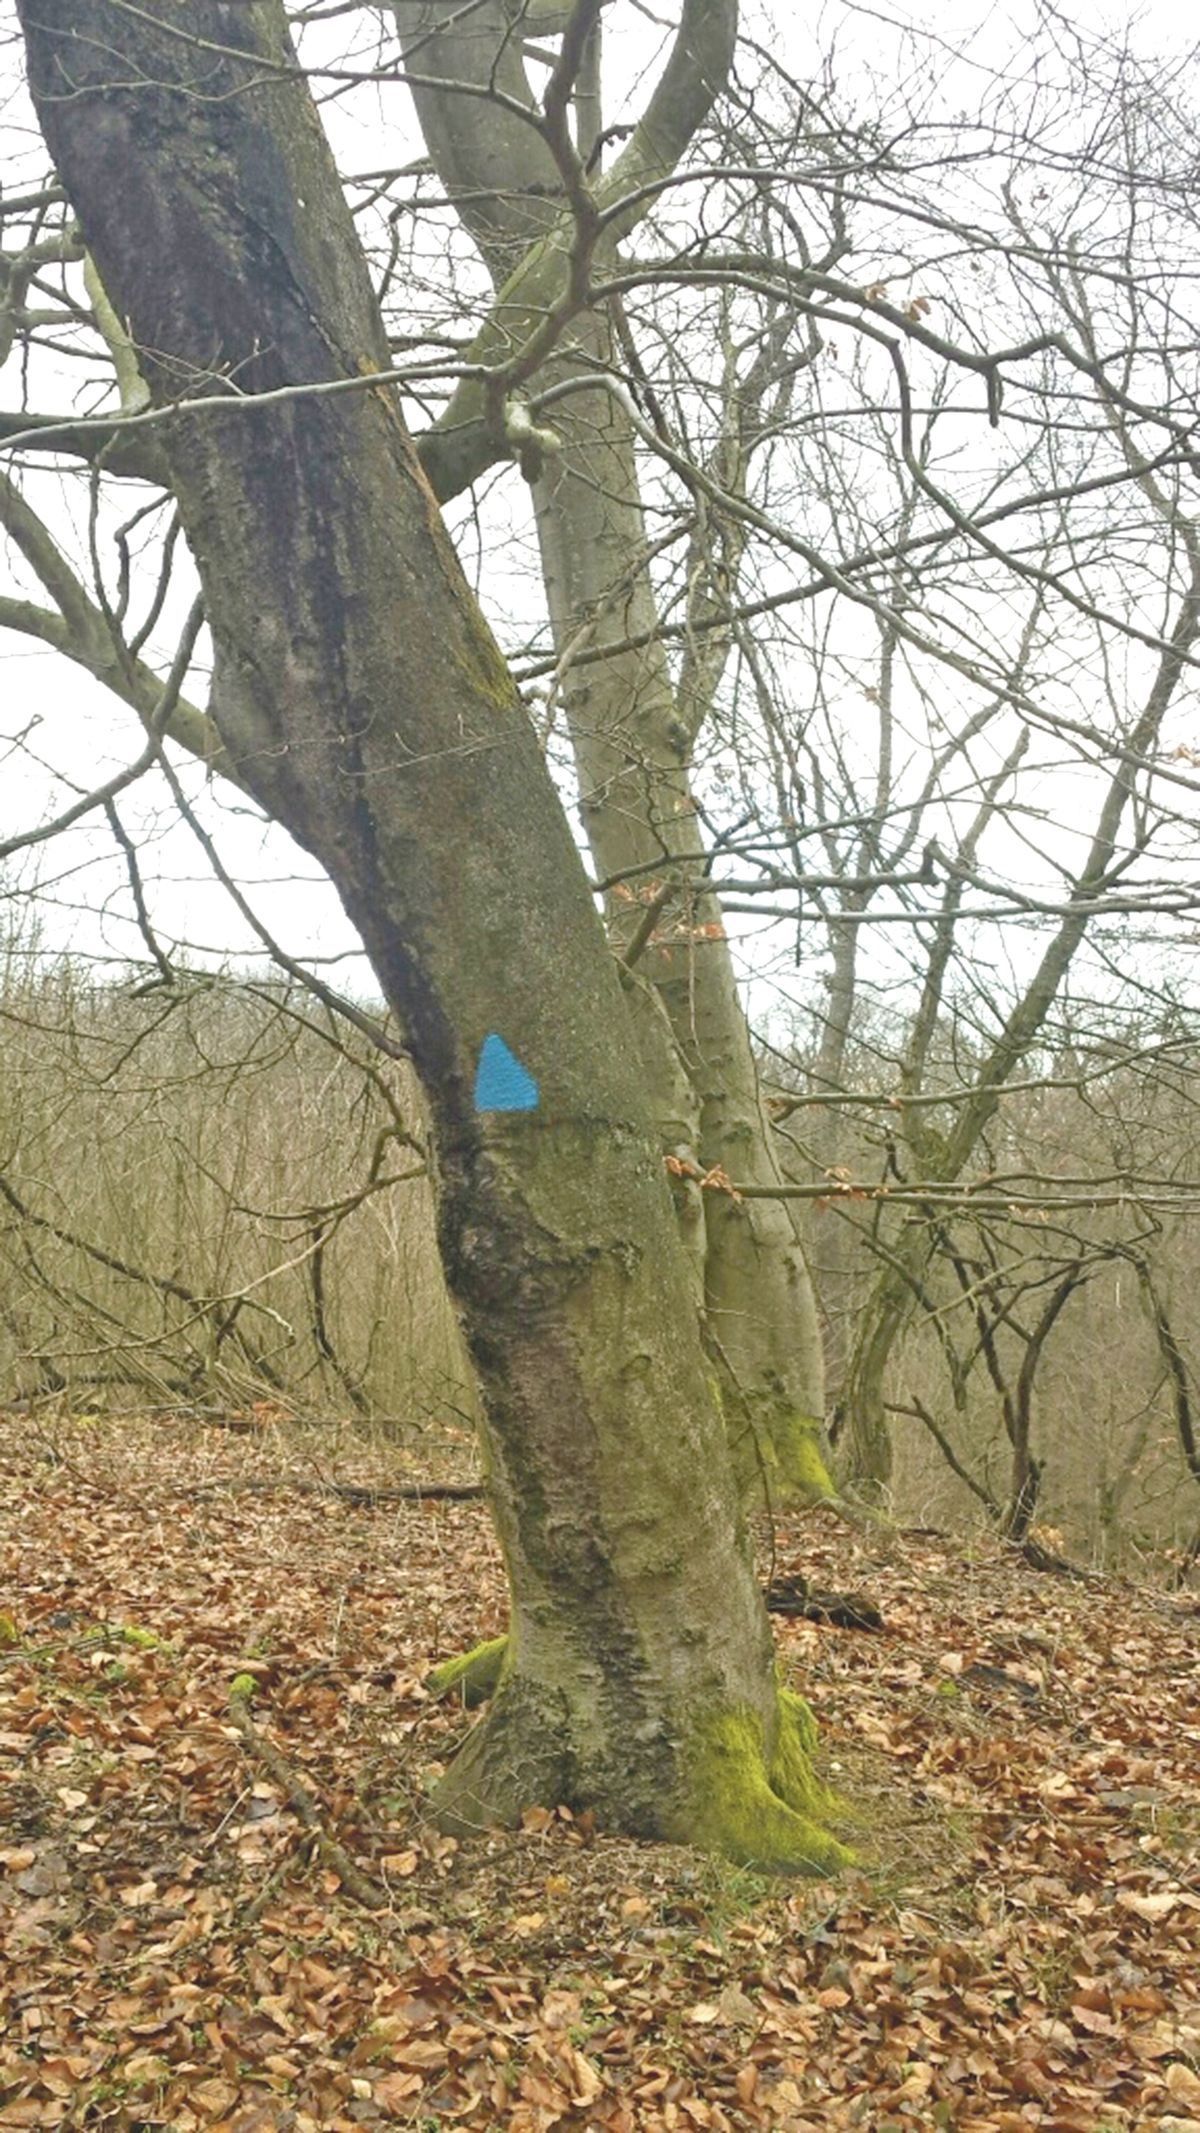 Modré trojúhelníky informují těžaře, aby strom nekáceli, neboť v něm žijí ptáci.